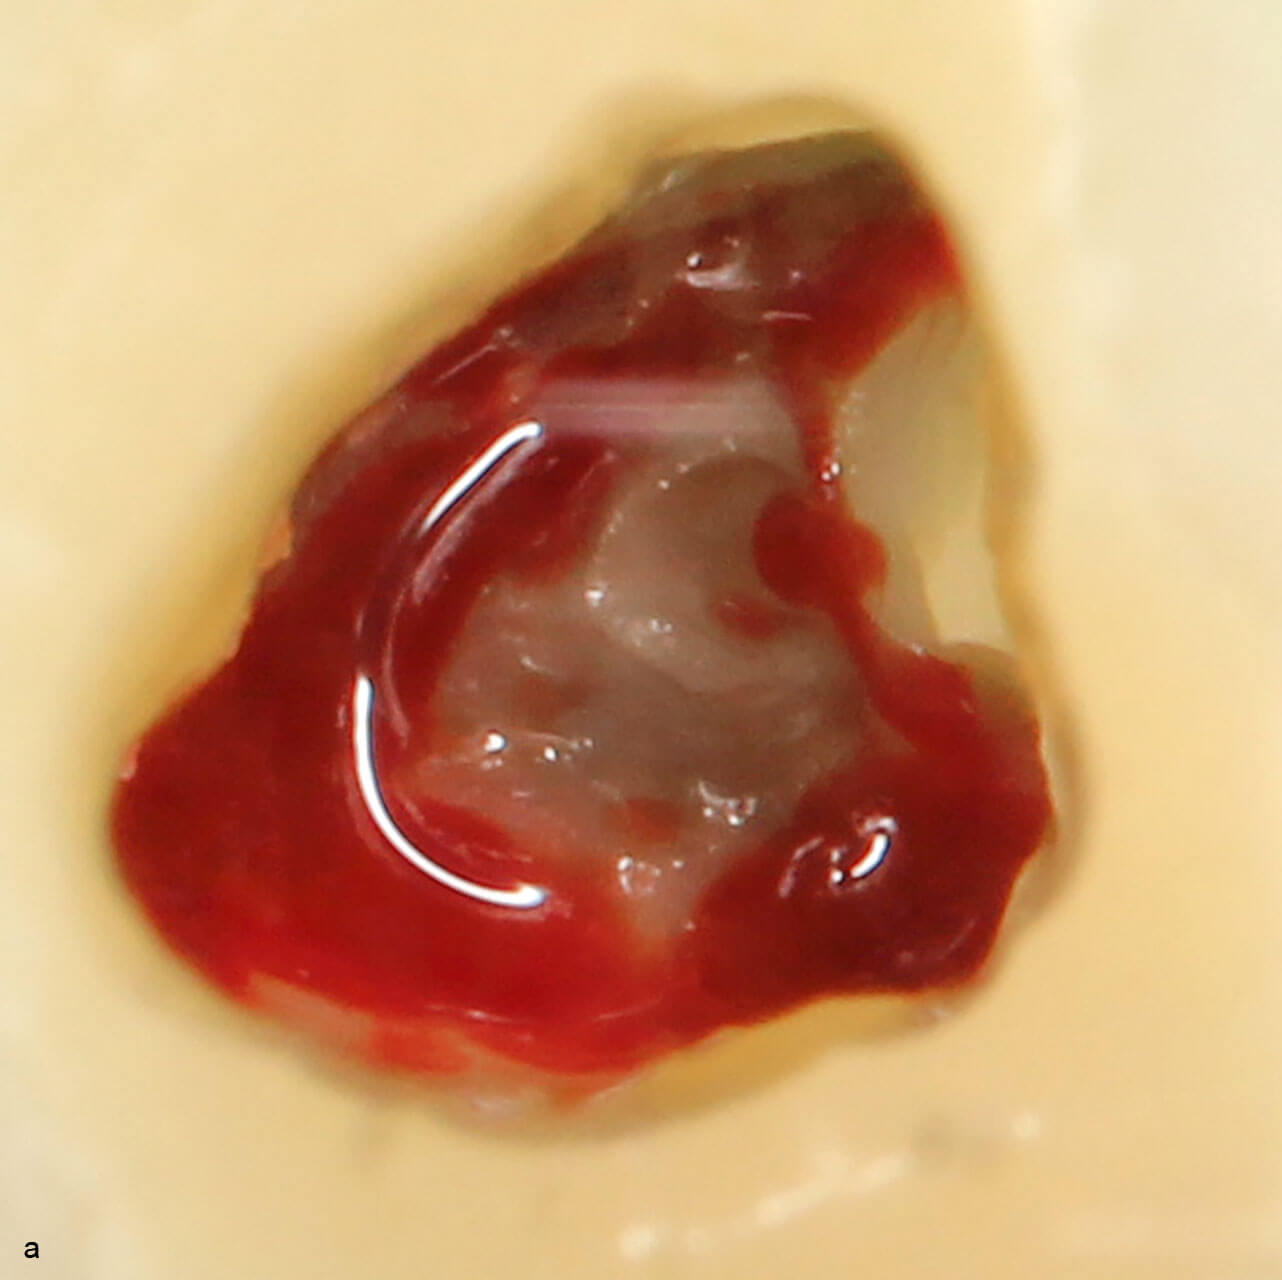 Abb. 14a und b Pulpa: a) nach initialer Eröffnung, b) mit persistierender Blutung aus dem palatinalen Kanal nach Behandlung mit 1 % NaOCl und sterilem Schaumstoffpellet.